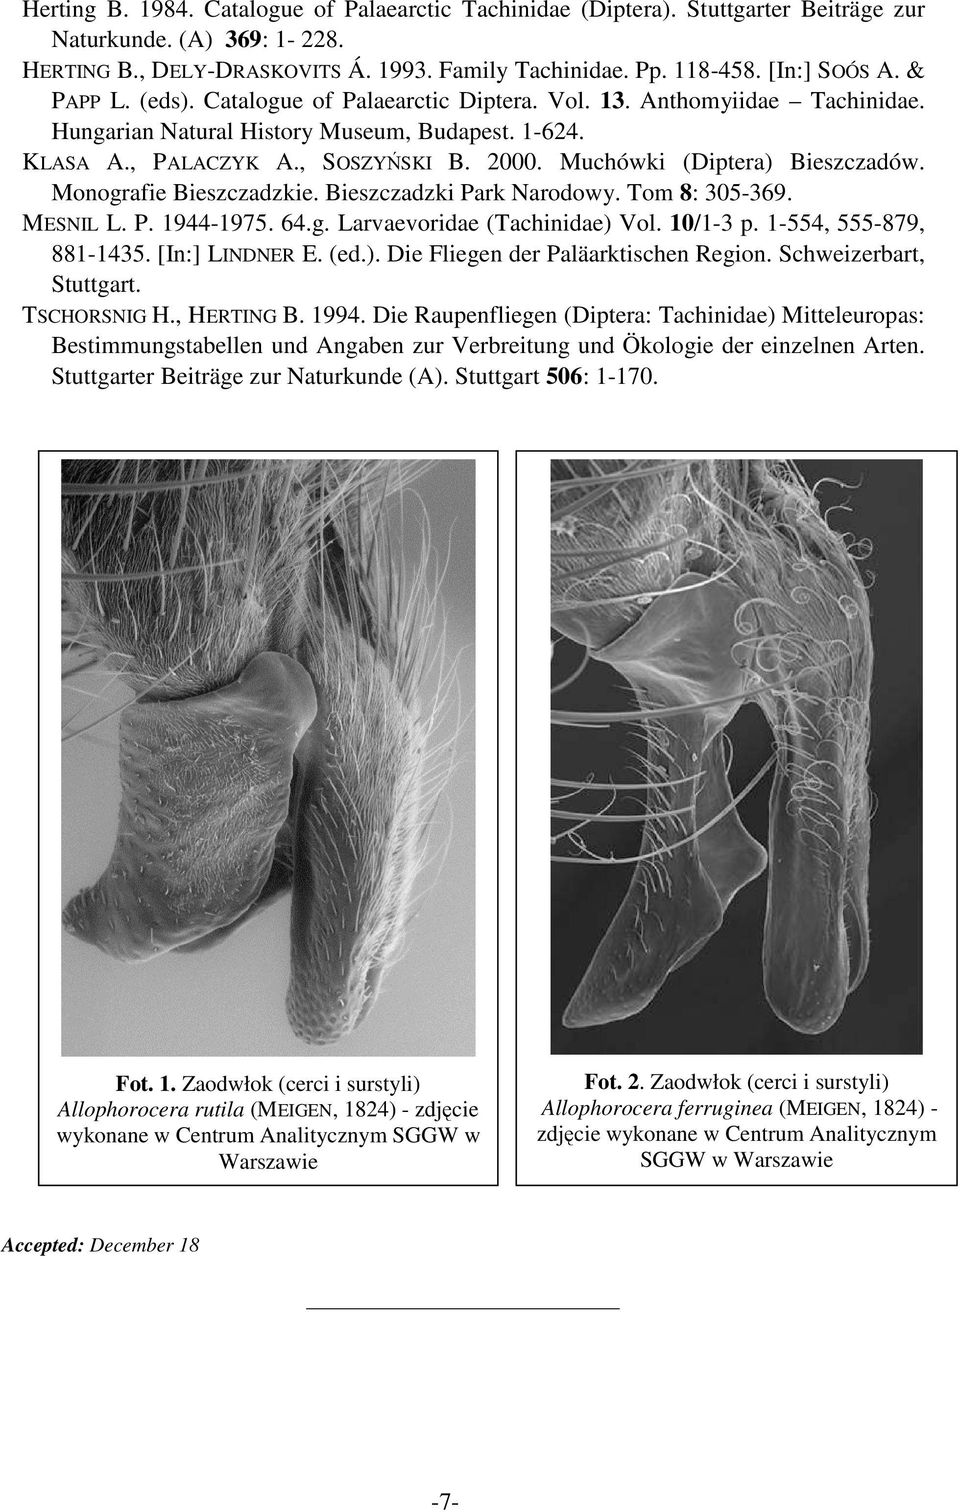 Muchówki (Diptera) Bieszczadów. Monografie Bieszczadzkie. Bieszczadzki Park Narodowy. Tom 8: 305-369. MESNIL L. P. 1944-1975. 64.g. Larvaevoridae (Tachinidae) Vol. 10/1-3 p. 1-554, 555-879, 881-1435.